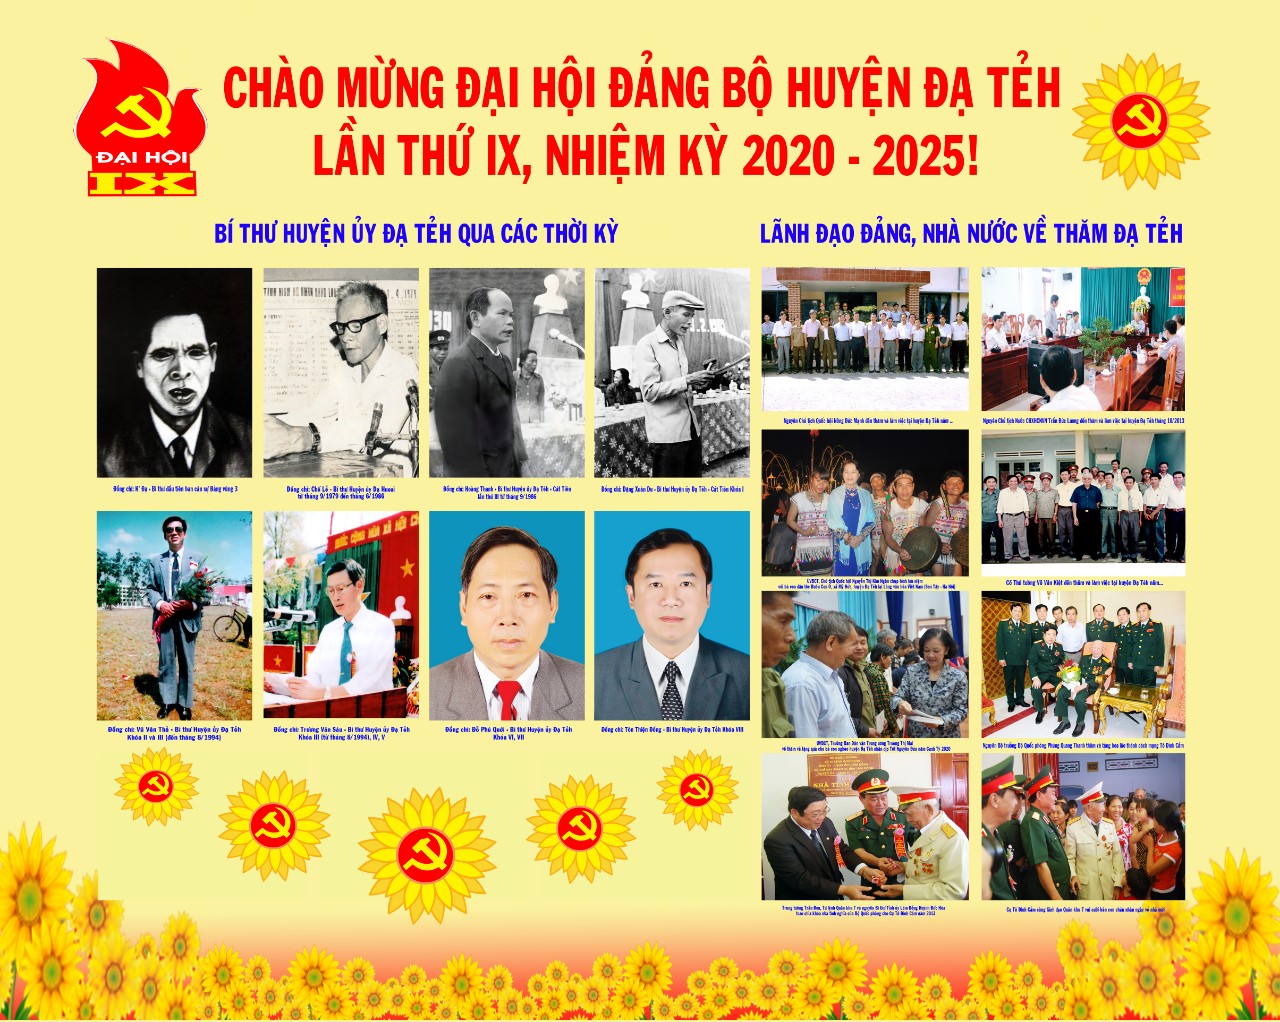 Triển lãm hình ảnh chào mừng Đại hội đại biểu Đảng bộ huyện Đạ Tẻh ...